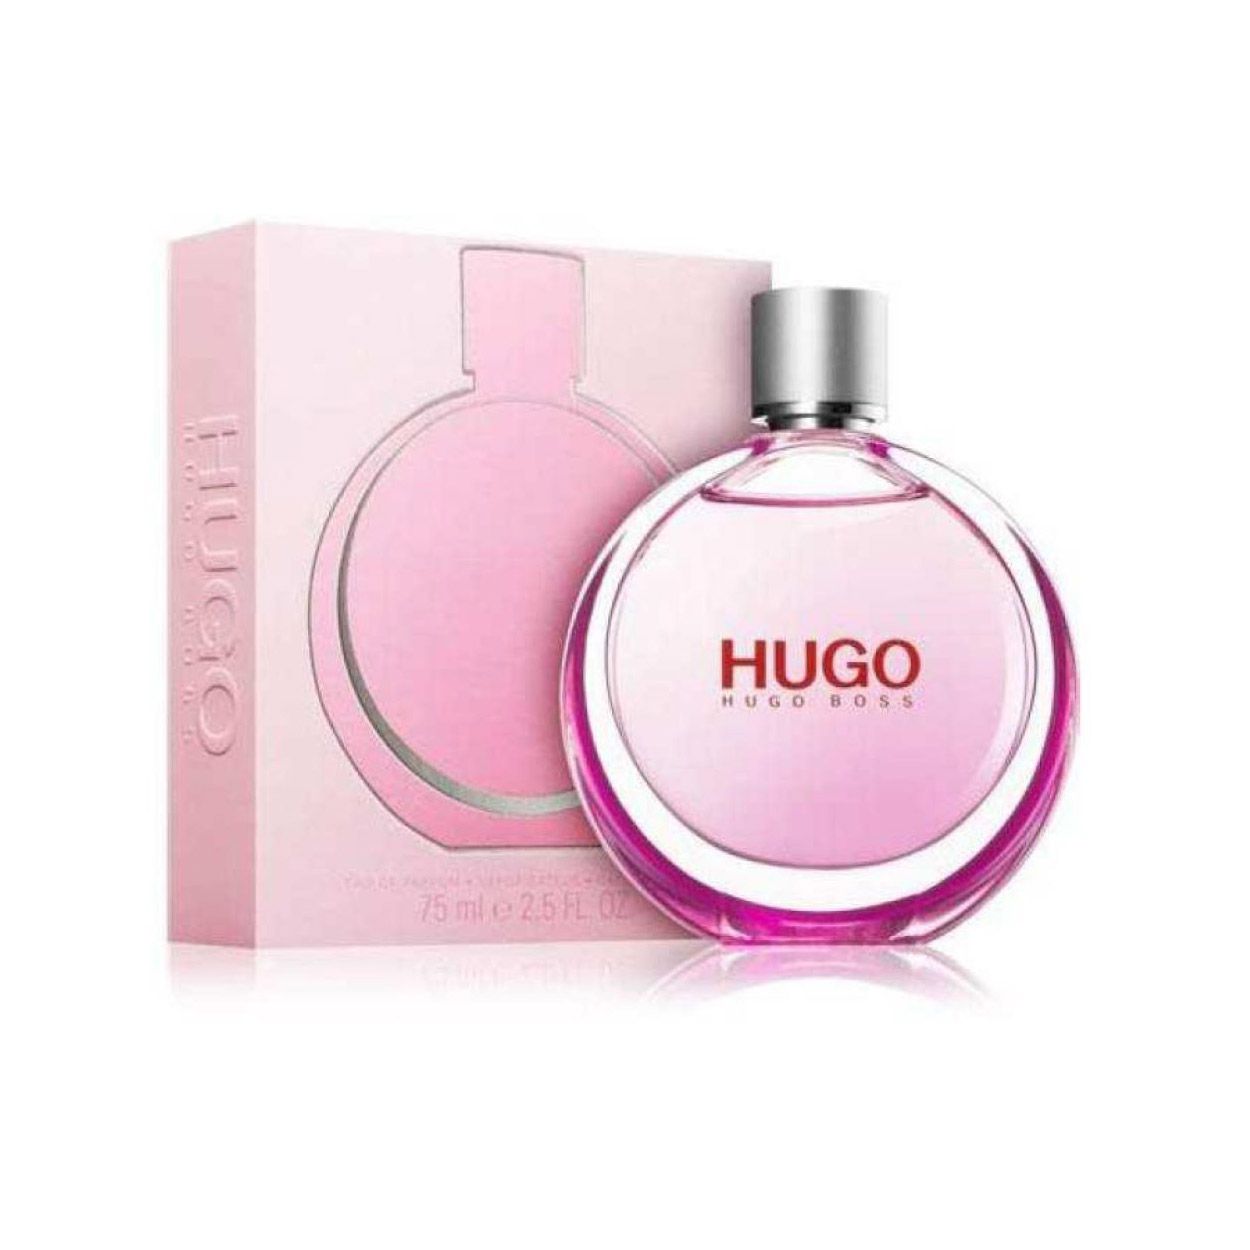 Hugo Boss Woman Extreme Eau De Parfum 75ml | Ratans Online Shop